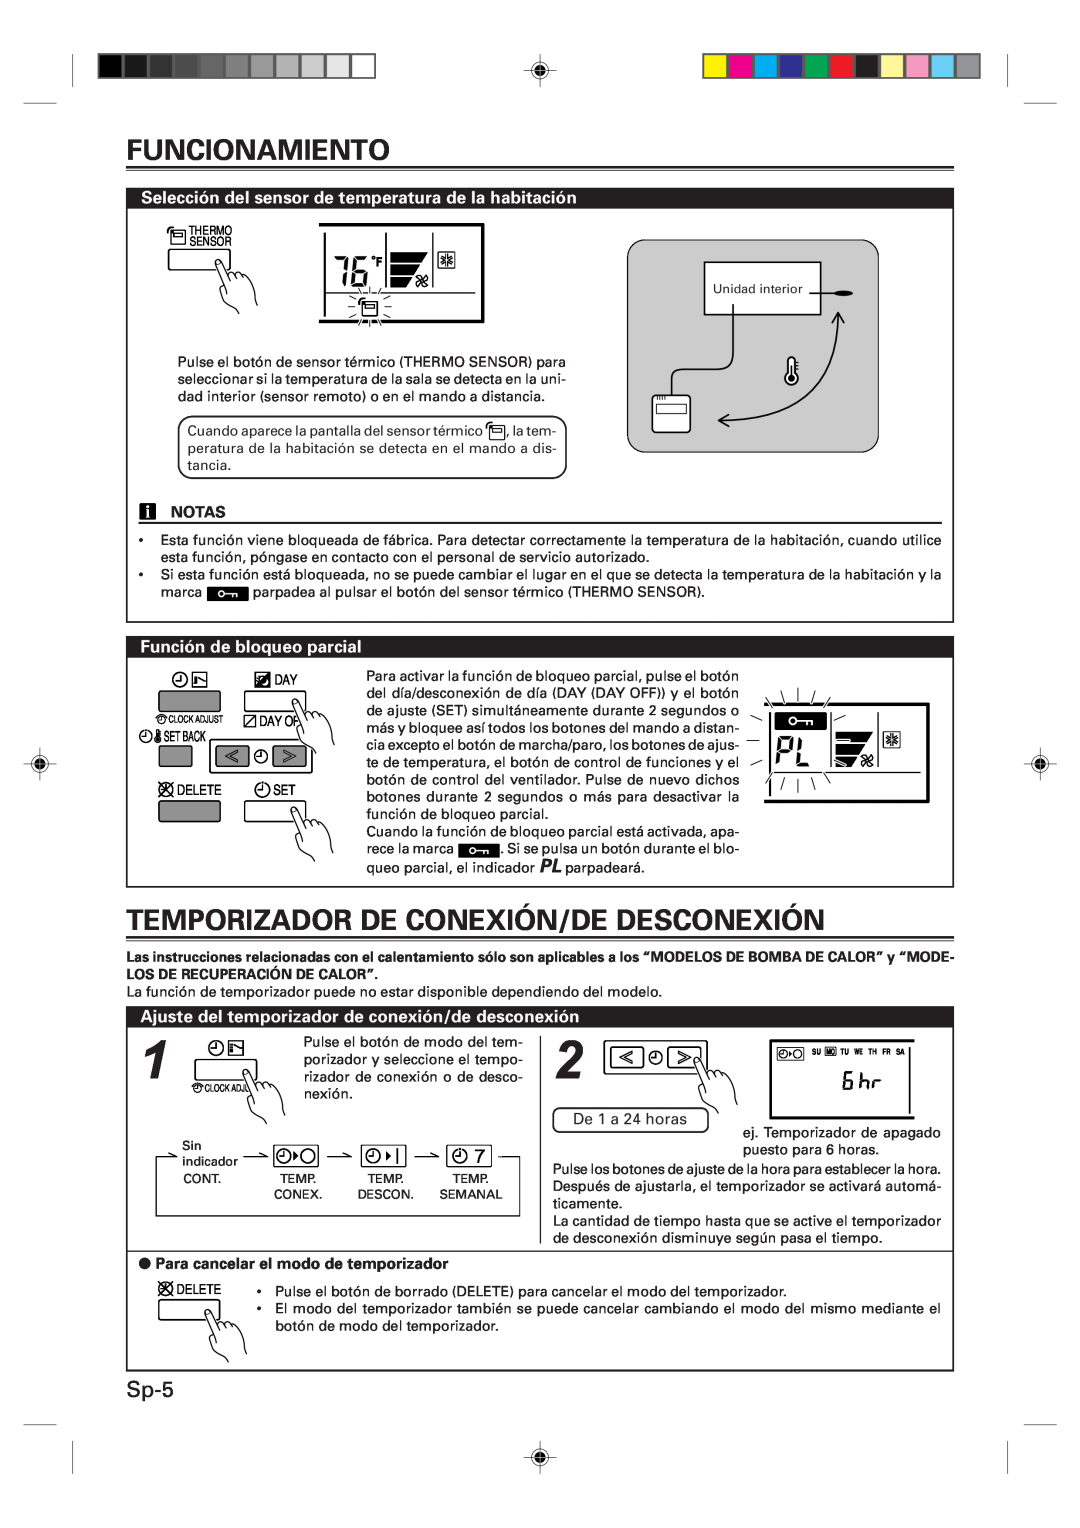 Fujitsu UTB-UUB Temporizador De Conexión/De Desconexión, Sp-5, Selección del sensor de temperatura de la habitación, Notas 